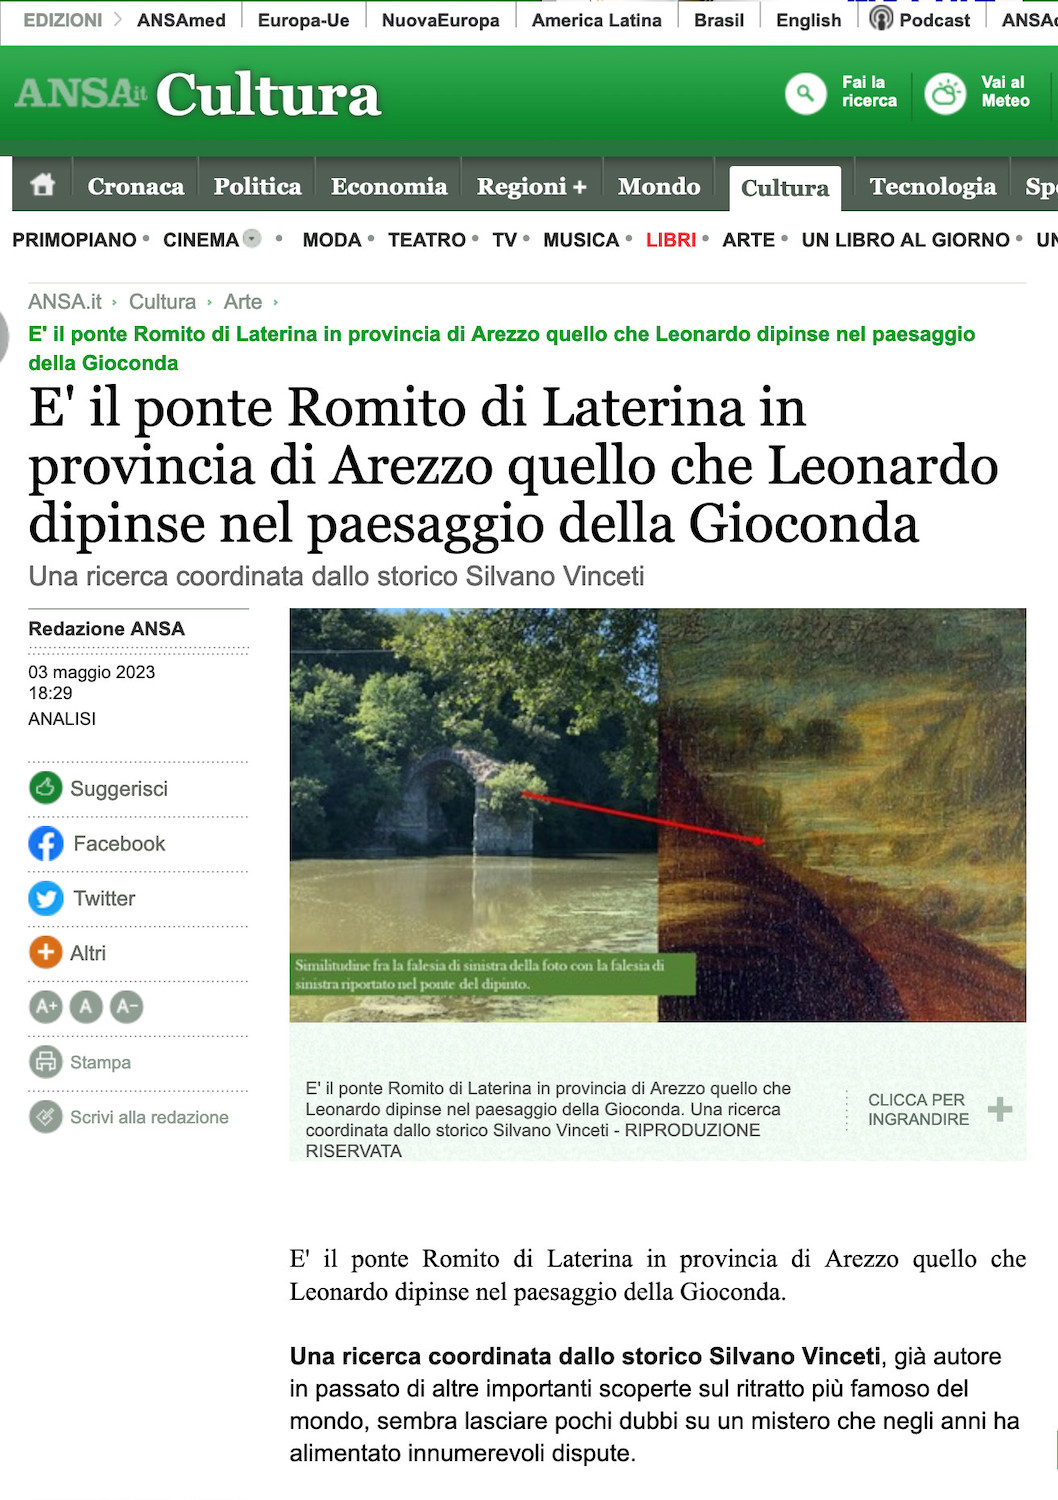 ANSA - E' il ponte Romito di Laterina in provincia di Arezzo quello che Leonardo dipinse nel paesaggio della Gioconda